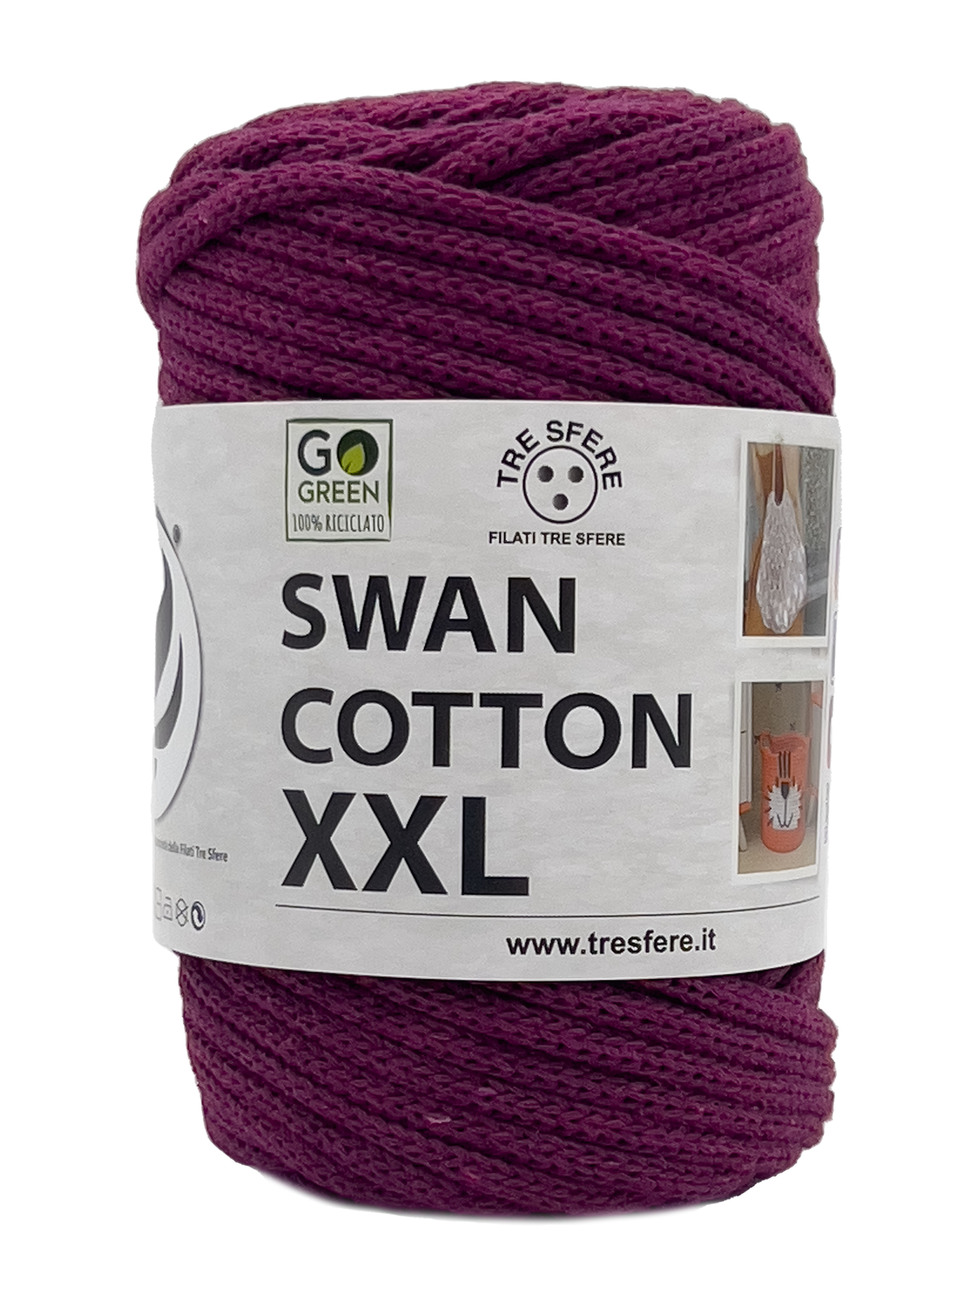 CORDINO SWAN COTTON XXL 250 grammi - Violetta